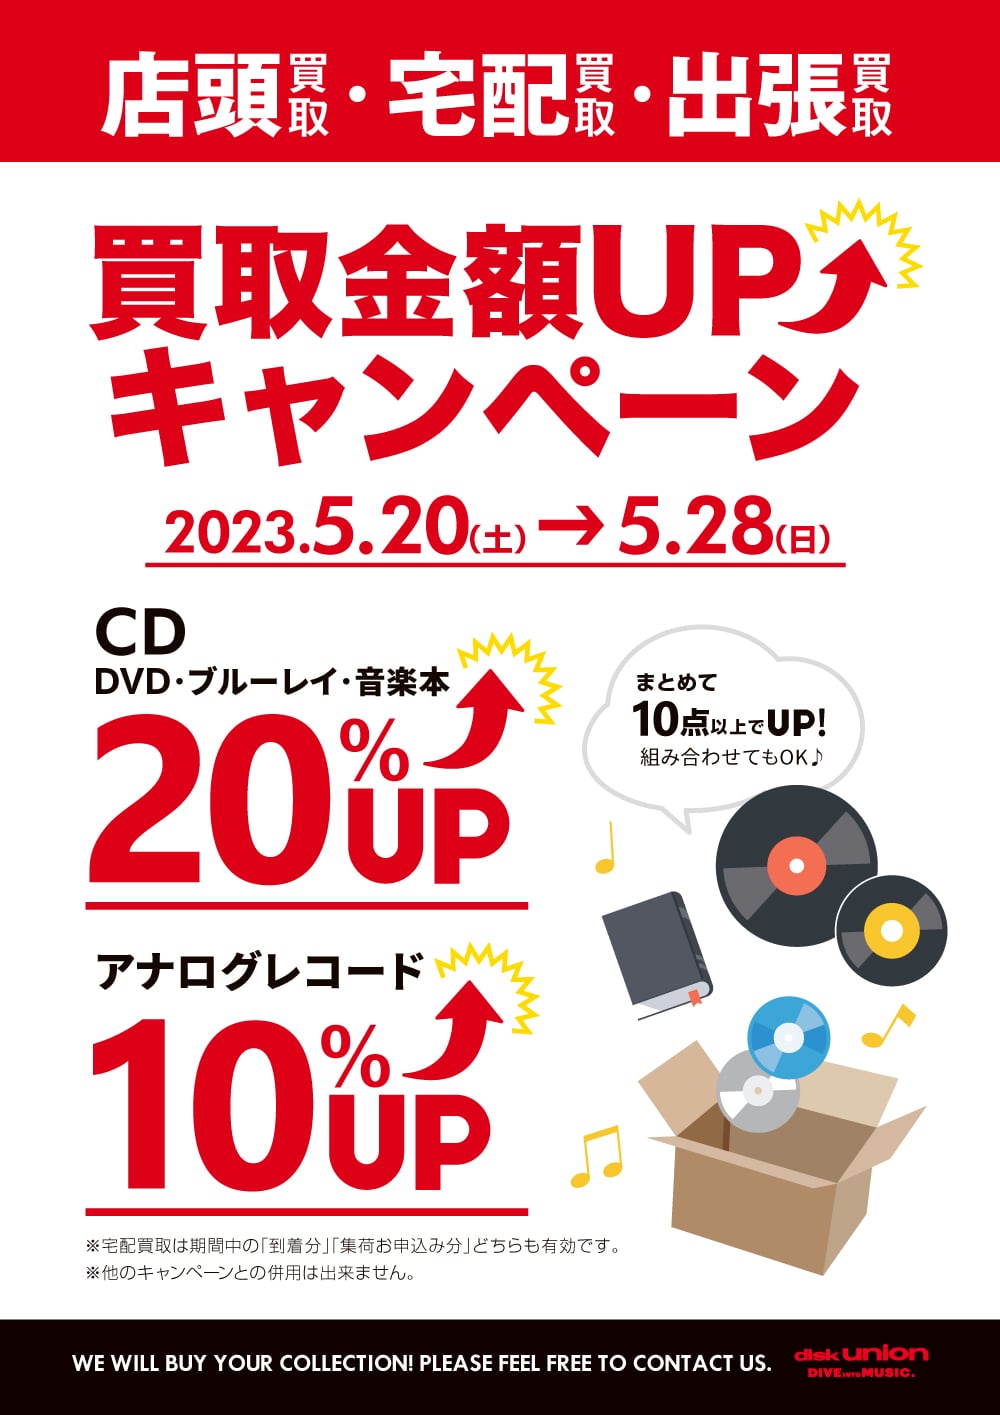 買取UP】CD・DVD・ブルーレイ・音楽本 買取金額20%UP+レコード買取金額